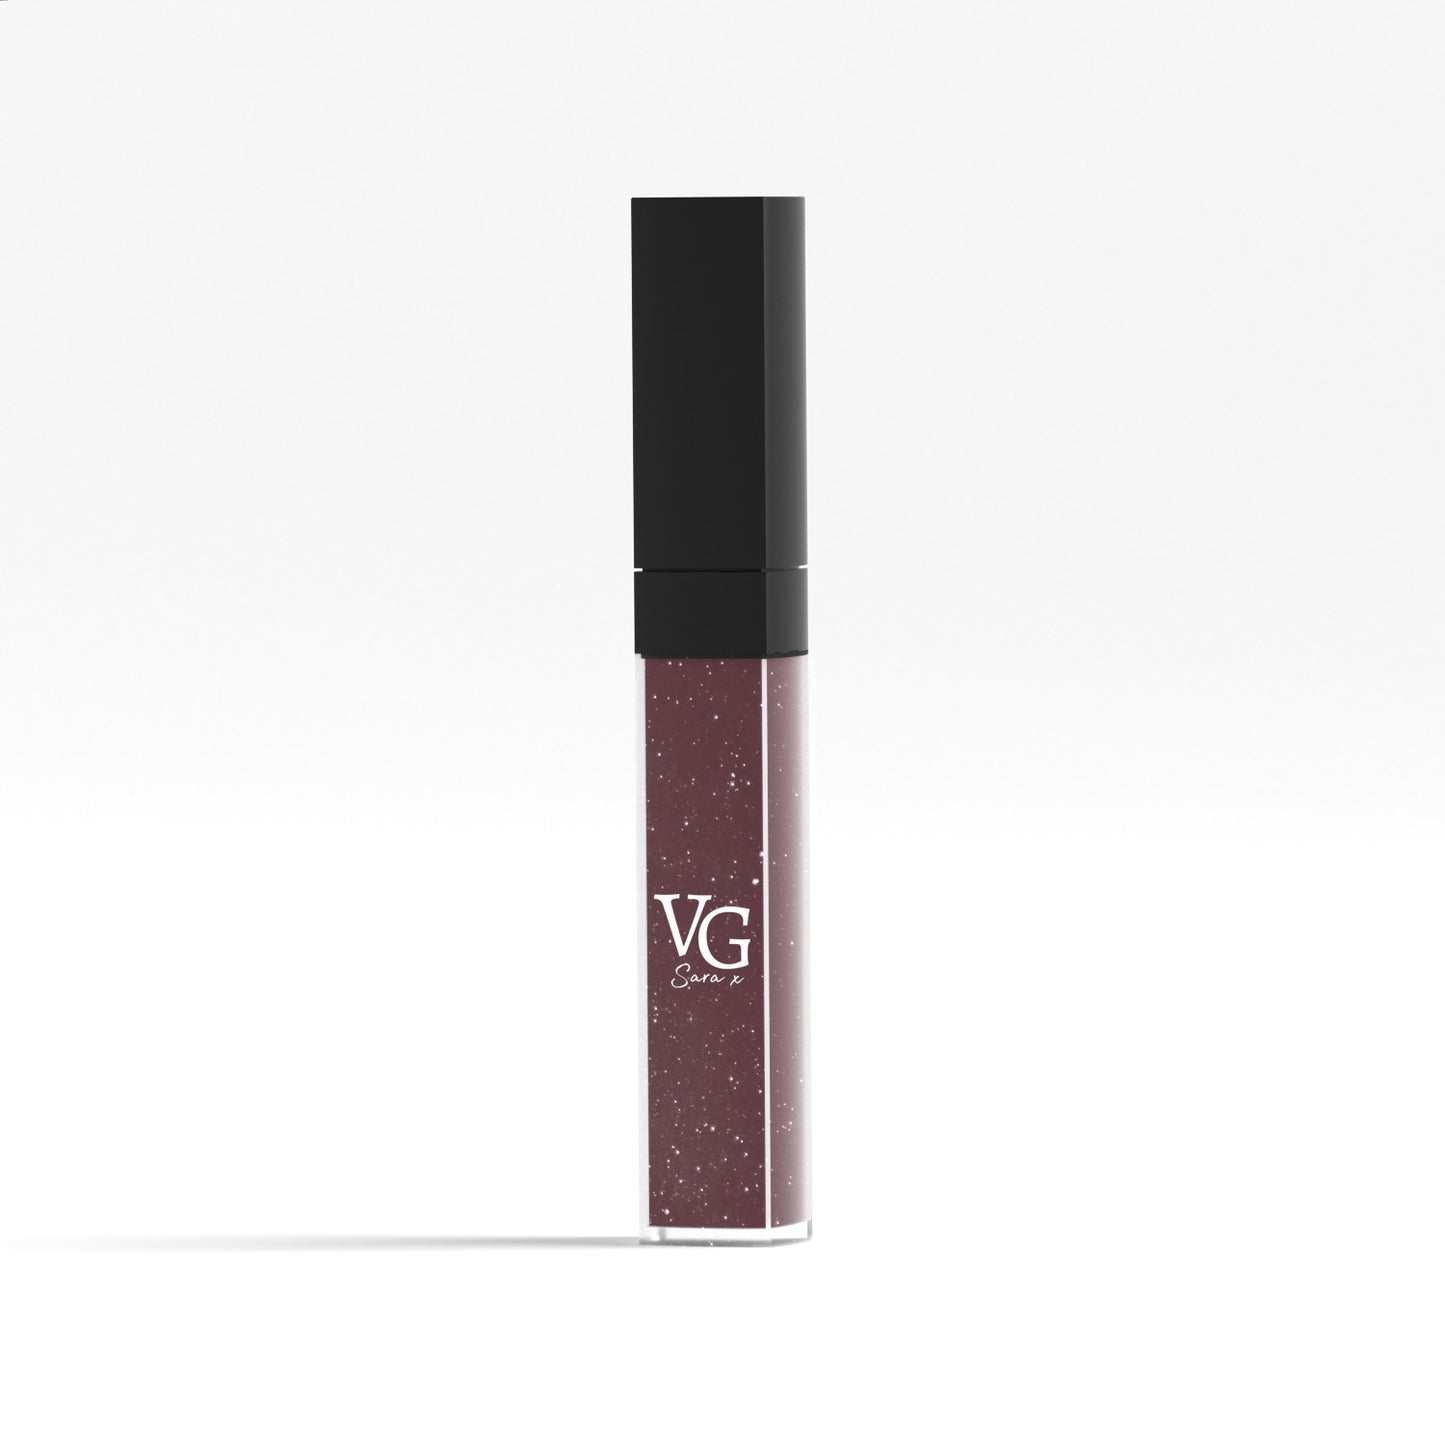 Dark purple vegan lip gloss product shot